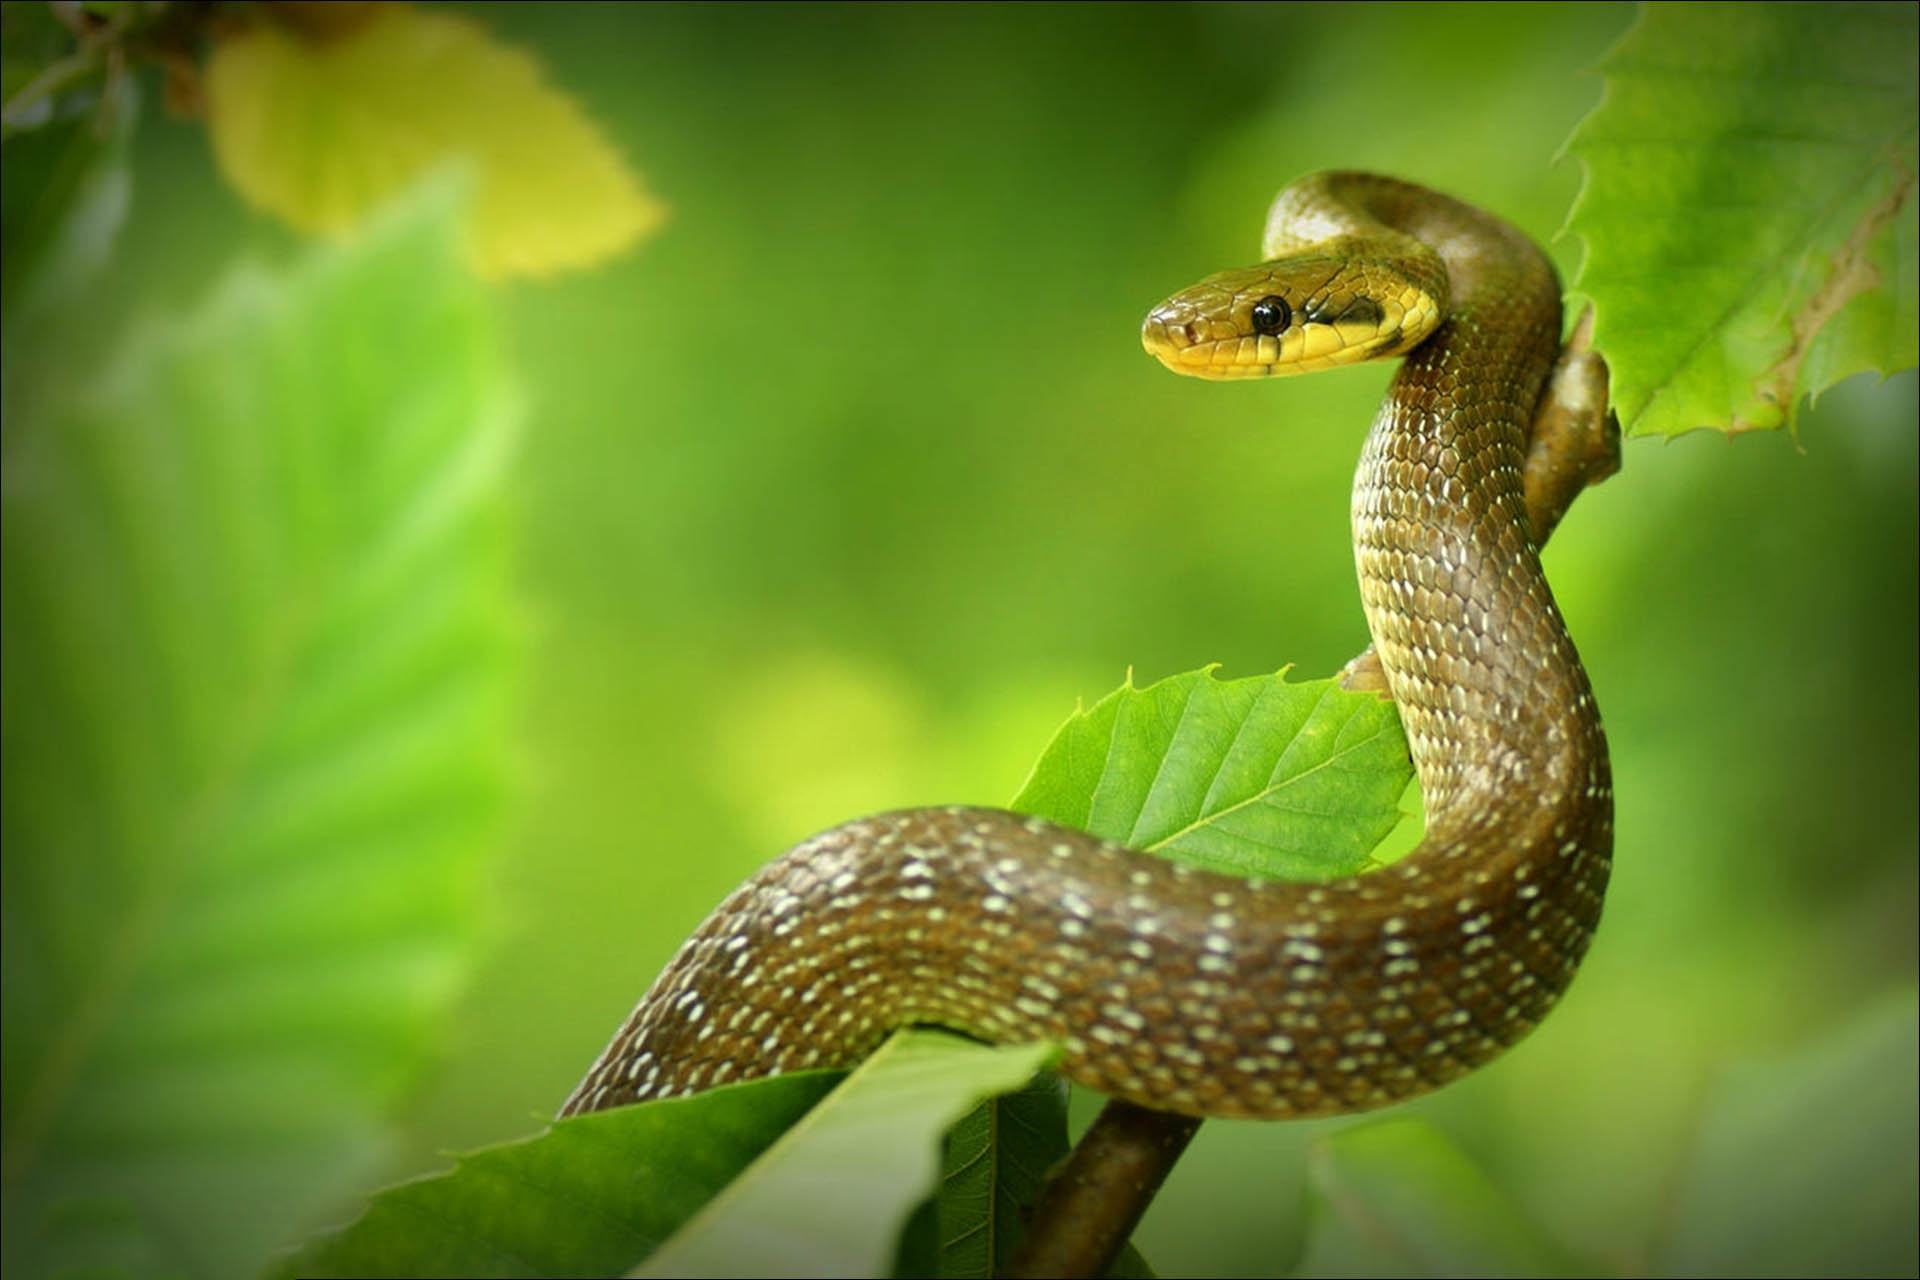 Bạn đang tìm kiếm một bước đầu tiên để học cách vẽ con rắn? Hãy xem hình ảnh liên quan để biết cách vẽ con rắn đơn giản và dễ hiểu nhất. Các nghệ sĩ tài ba đã chia sẻ những bí quyết để tạo ra một bức tranh nghệ thuật tuyệt đẹp, độc đáo và đầy tính sáng tạo.